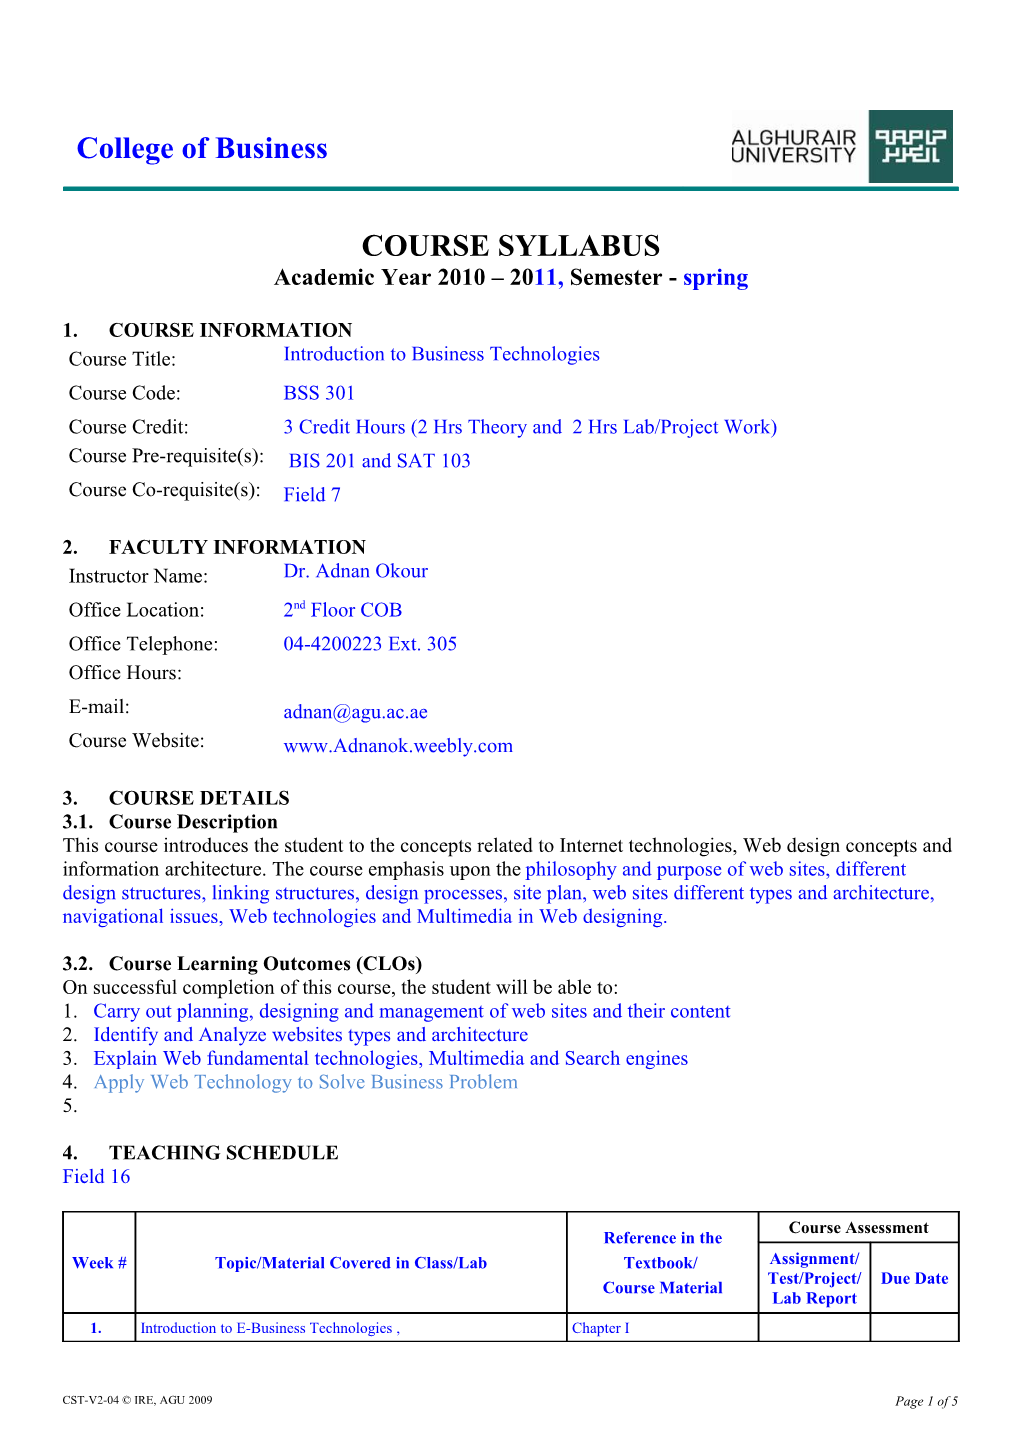 Course Syllabus Template-WS-AY08-09